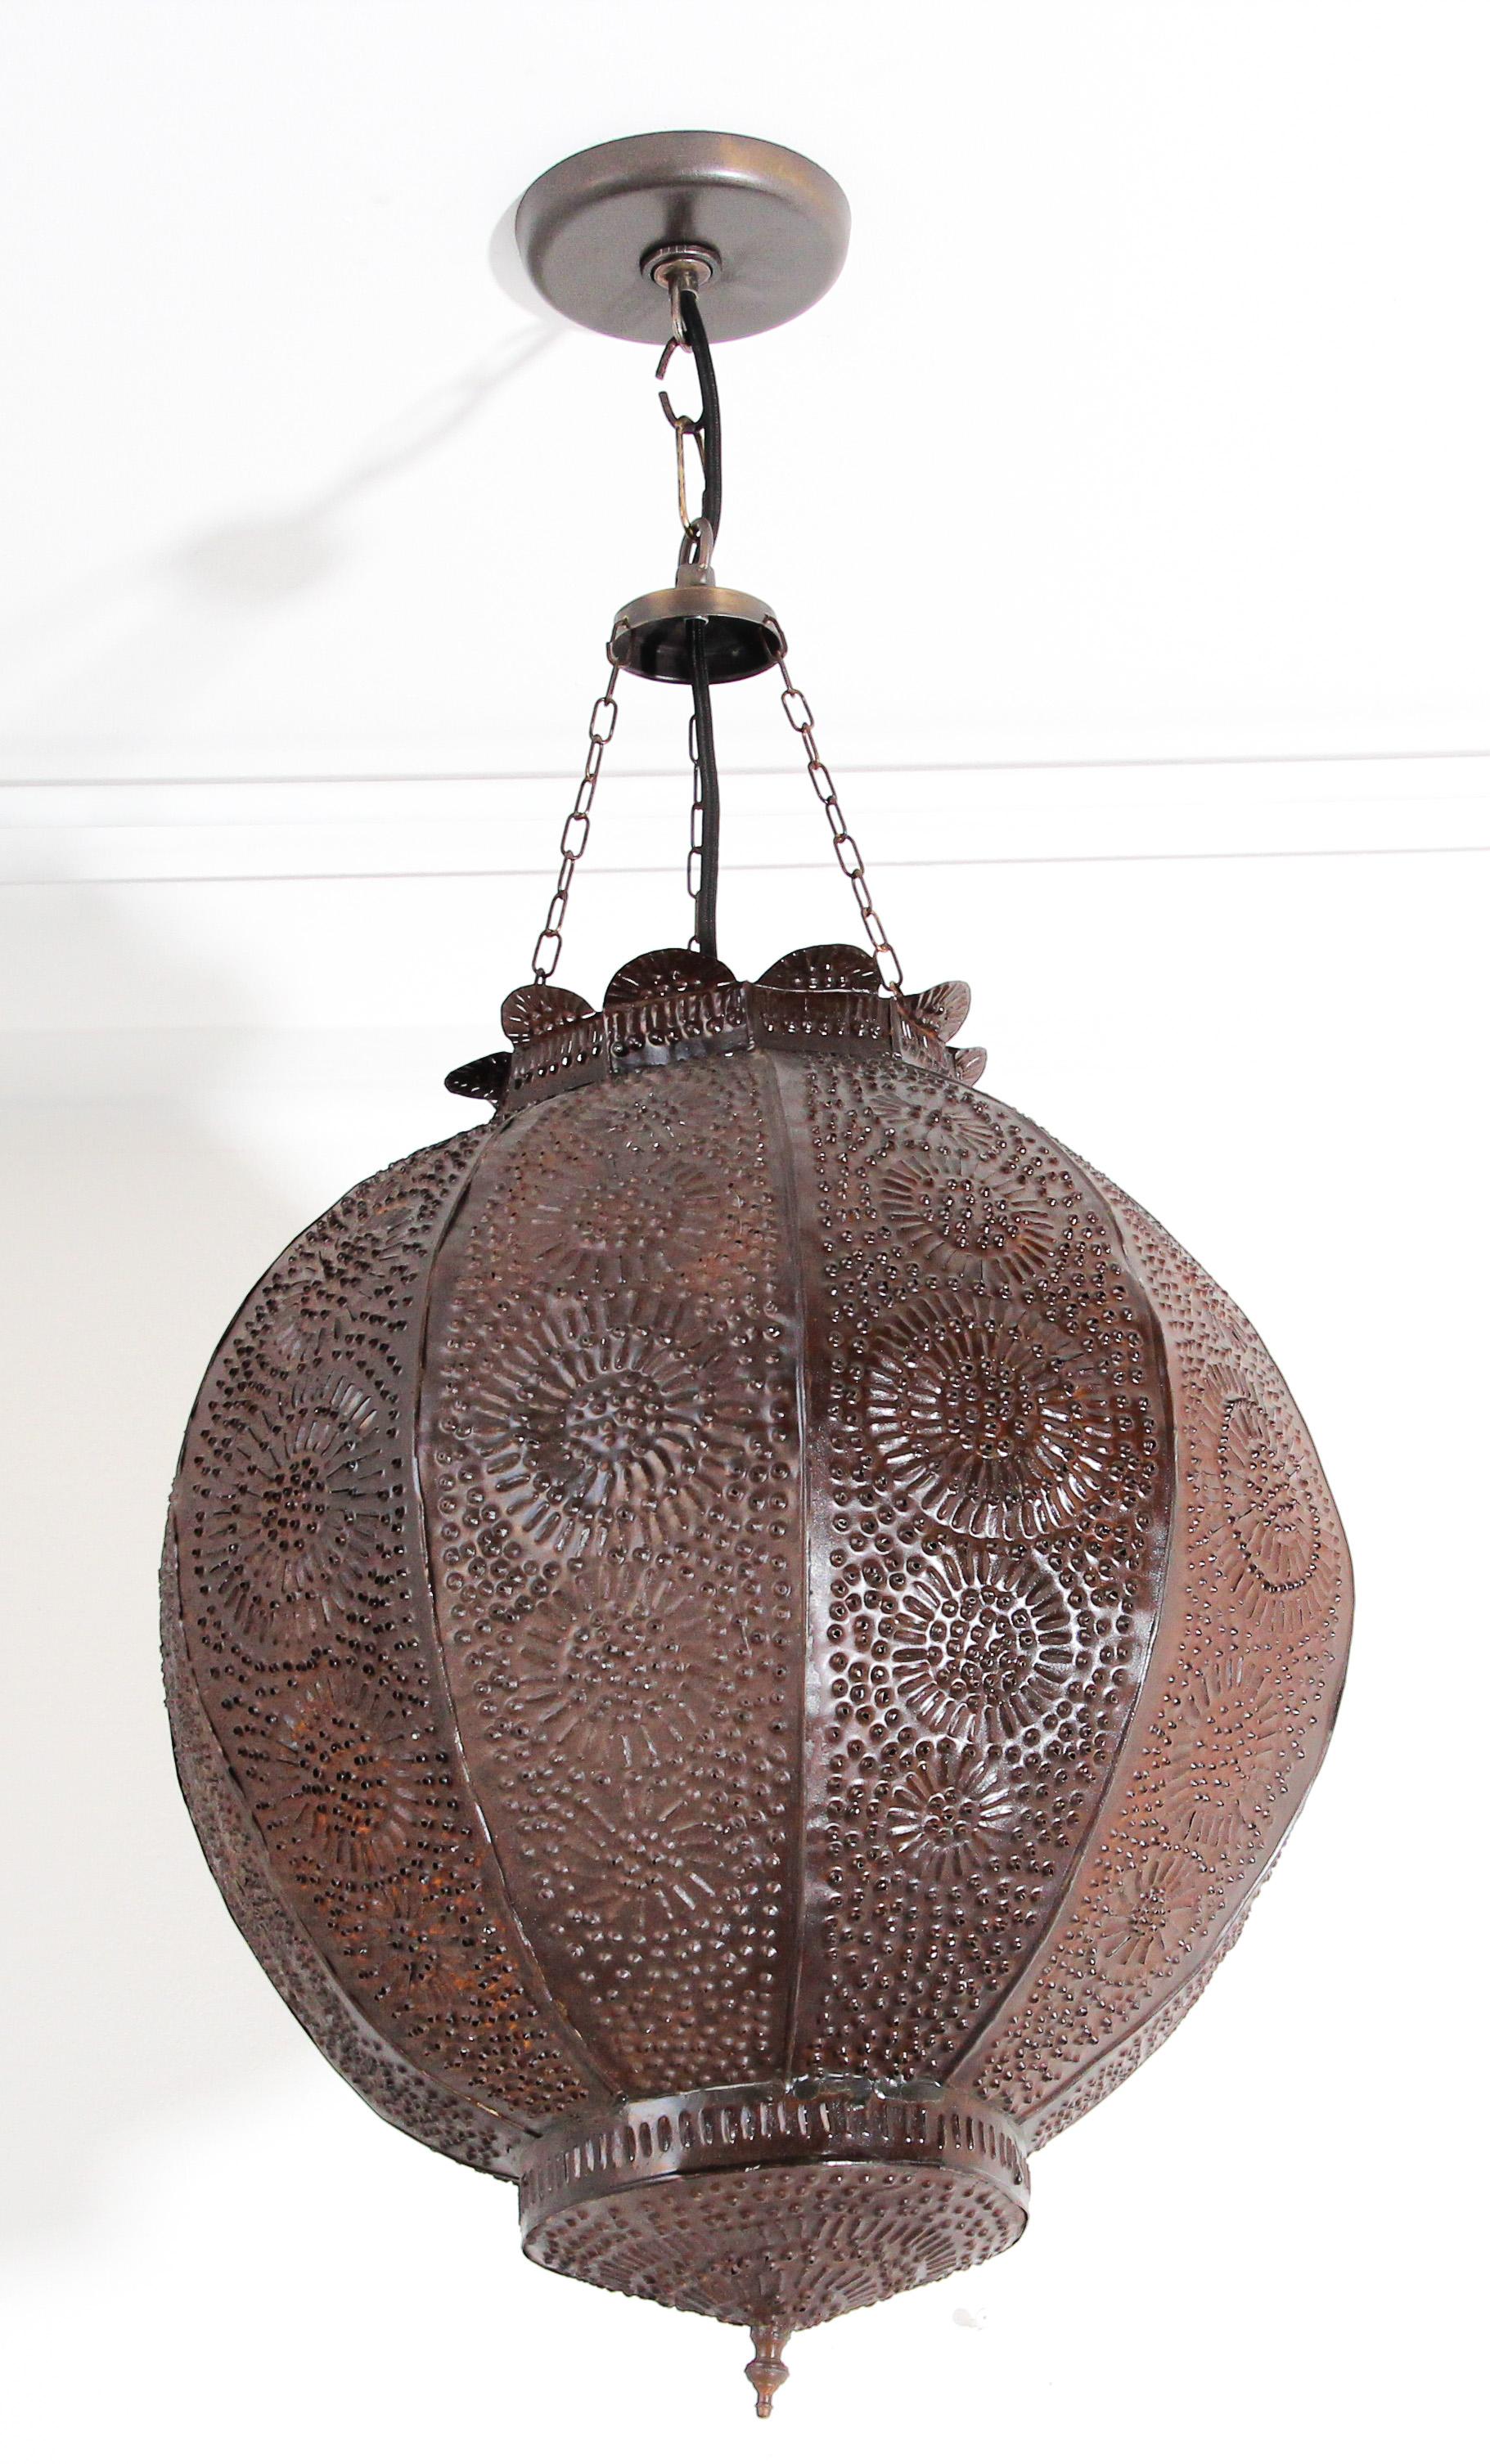 Pendentif orbe en métal fabriqué à la main par des artisans qualifiés au Maroc, en Afrique du Nord.
Étonnante lanterne marocaine en métal percée à la main de milliers de petits trous pour diffuser la lumière.
Forme de grenade ornée d'un motif